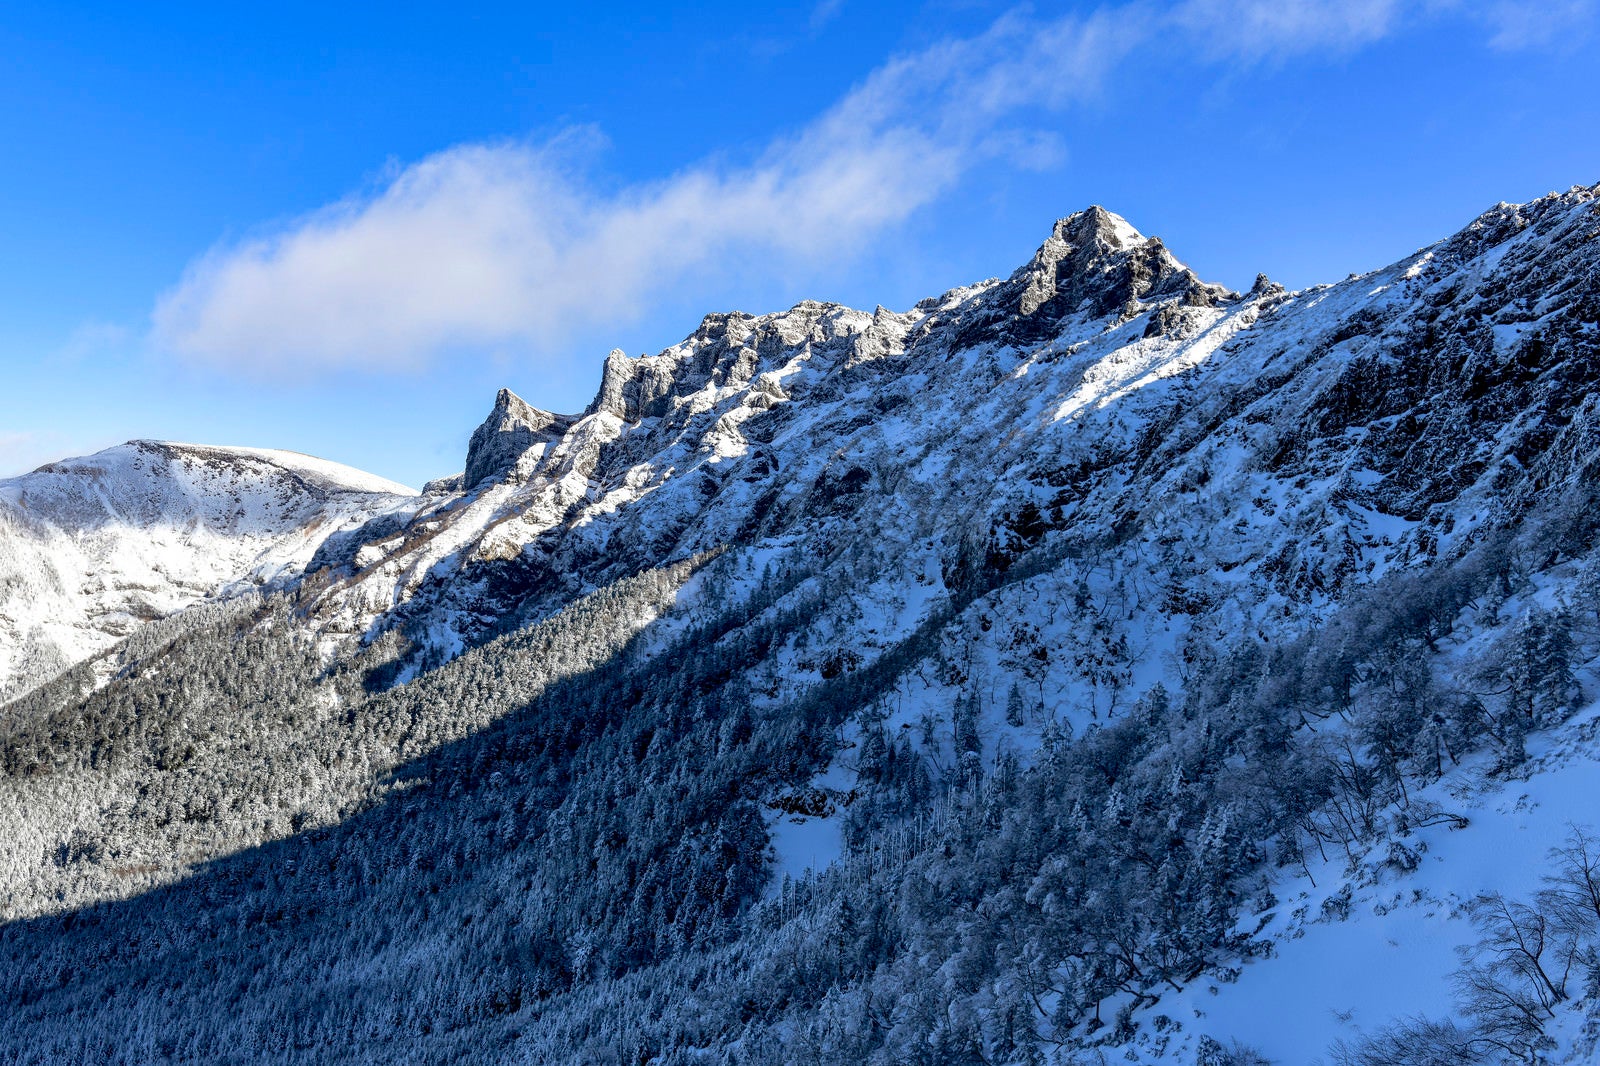 「冬の文三郎尾根から眺める横岳と硫黄岳」の写真